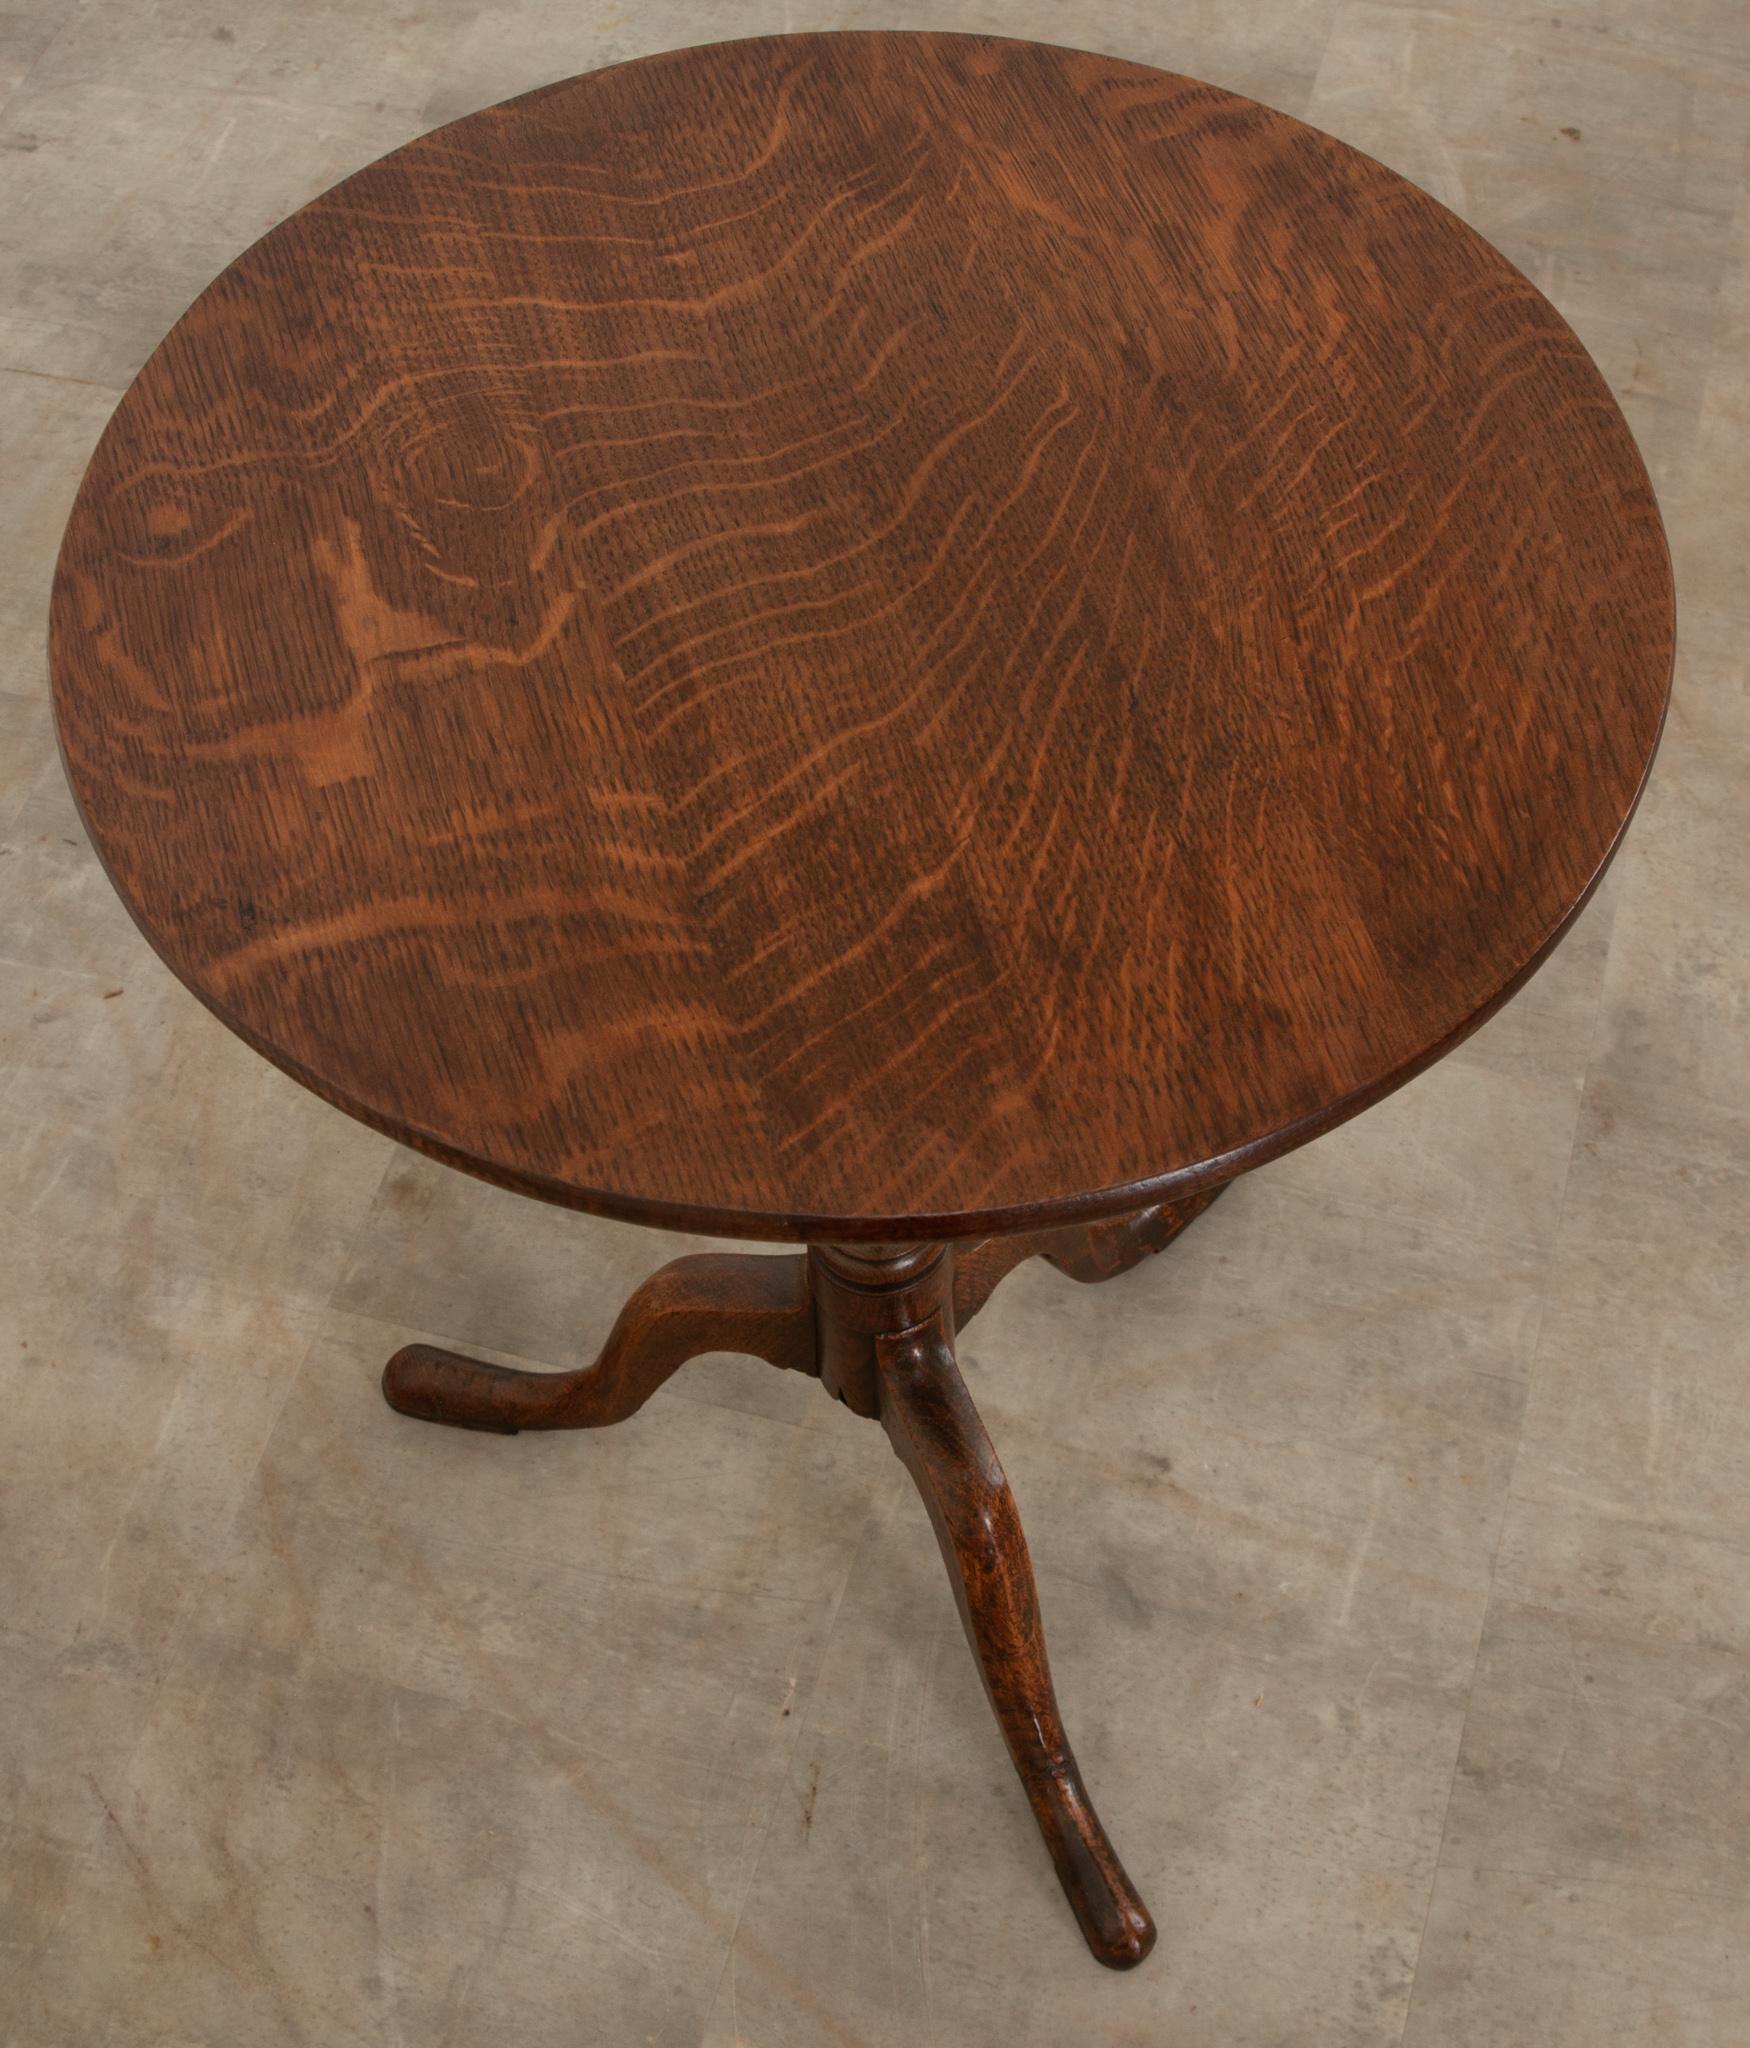 Cette table anglaise à plateau basculant a été fabriquée en chêne massif vers 1820. Construit simplement avec une patine fantastique, le plateau s'incline pour atteindre 37- ? 